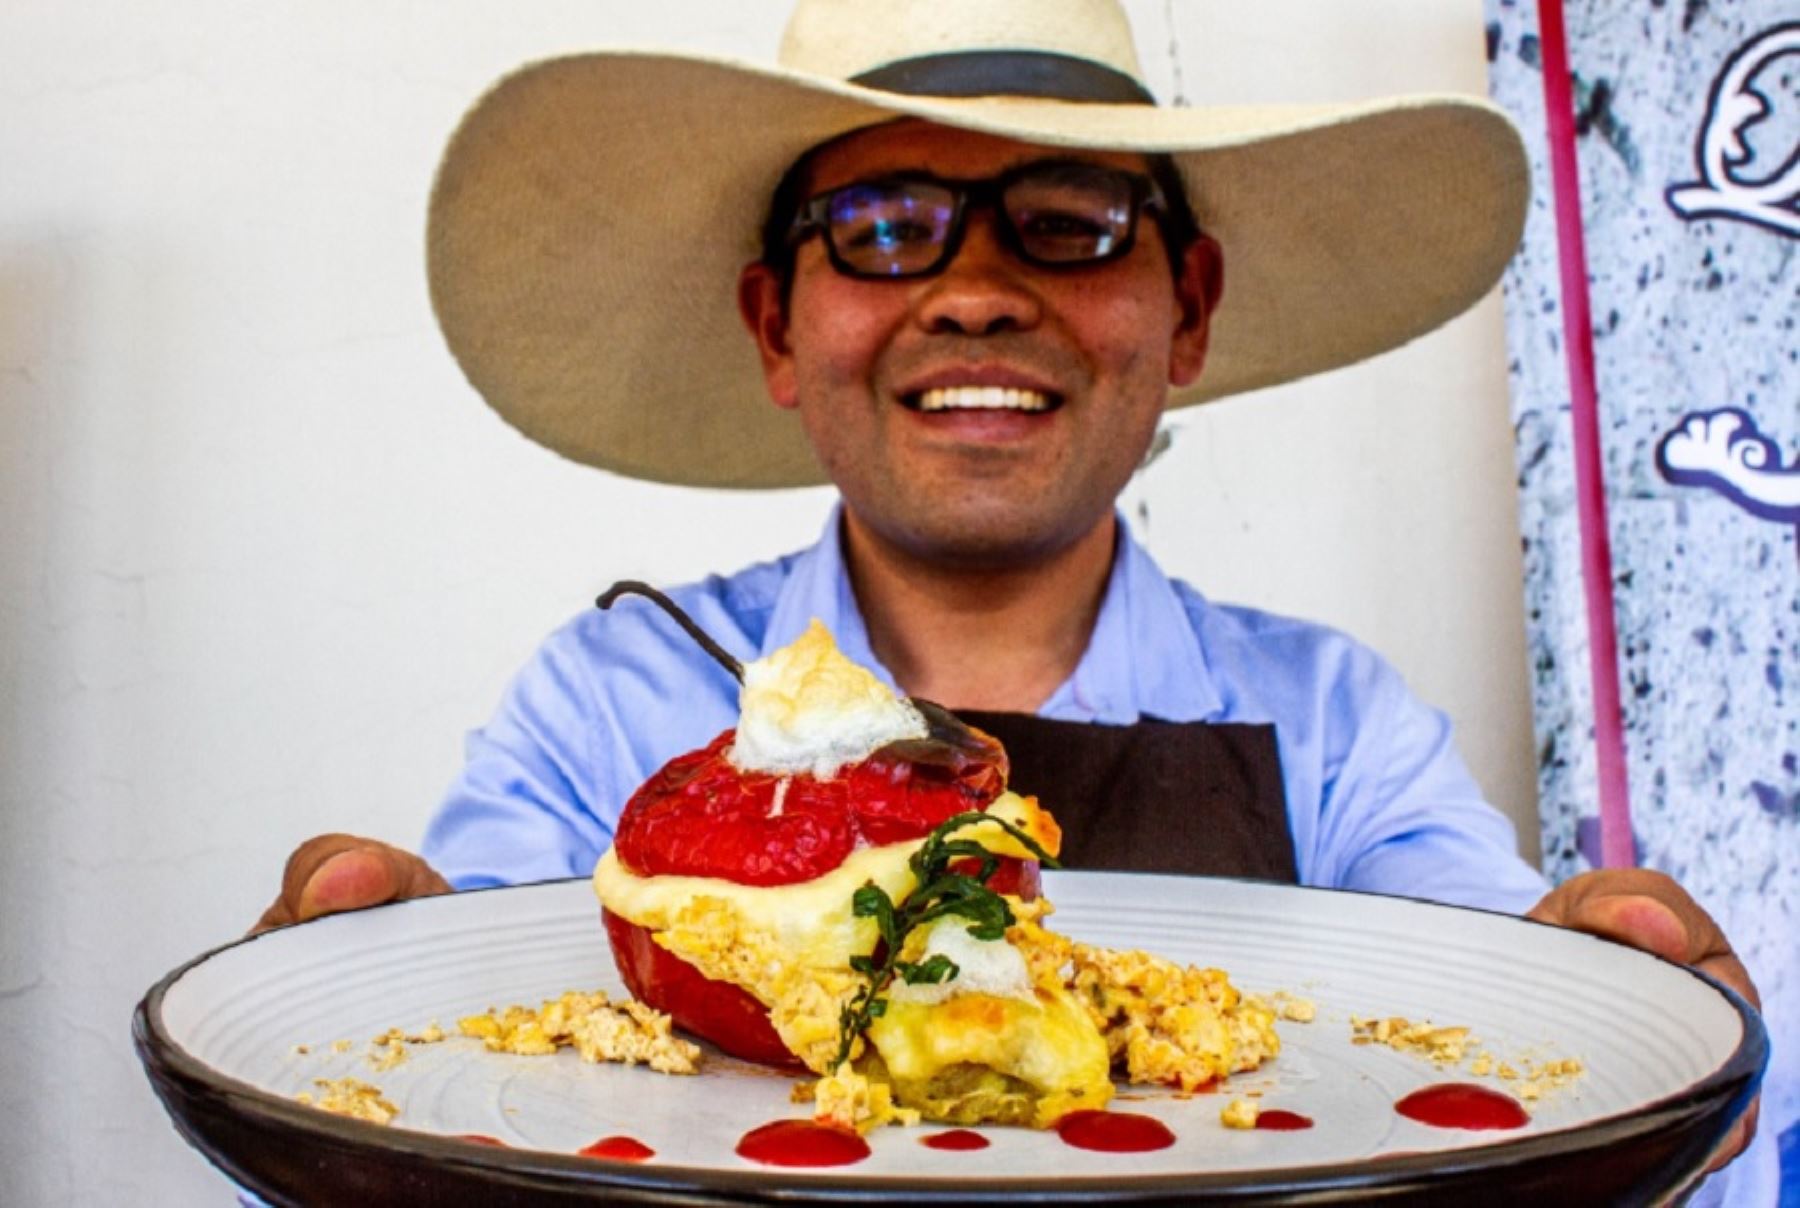 Una de las poderosas motivaciones para visitar la ciudad de Arequipa es saborear su irresistible, variada y original gastronomía que seduce paladares con una vasta oferta de manjares que le han conferido un bien ganado prestigio regional, nacional y mundial.